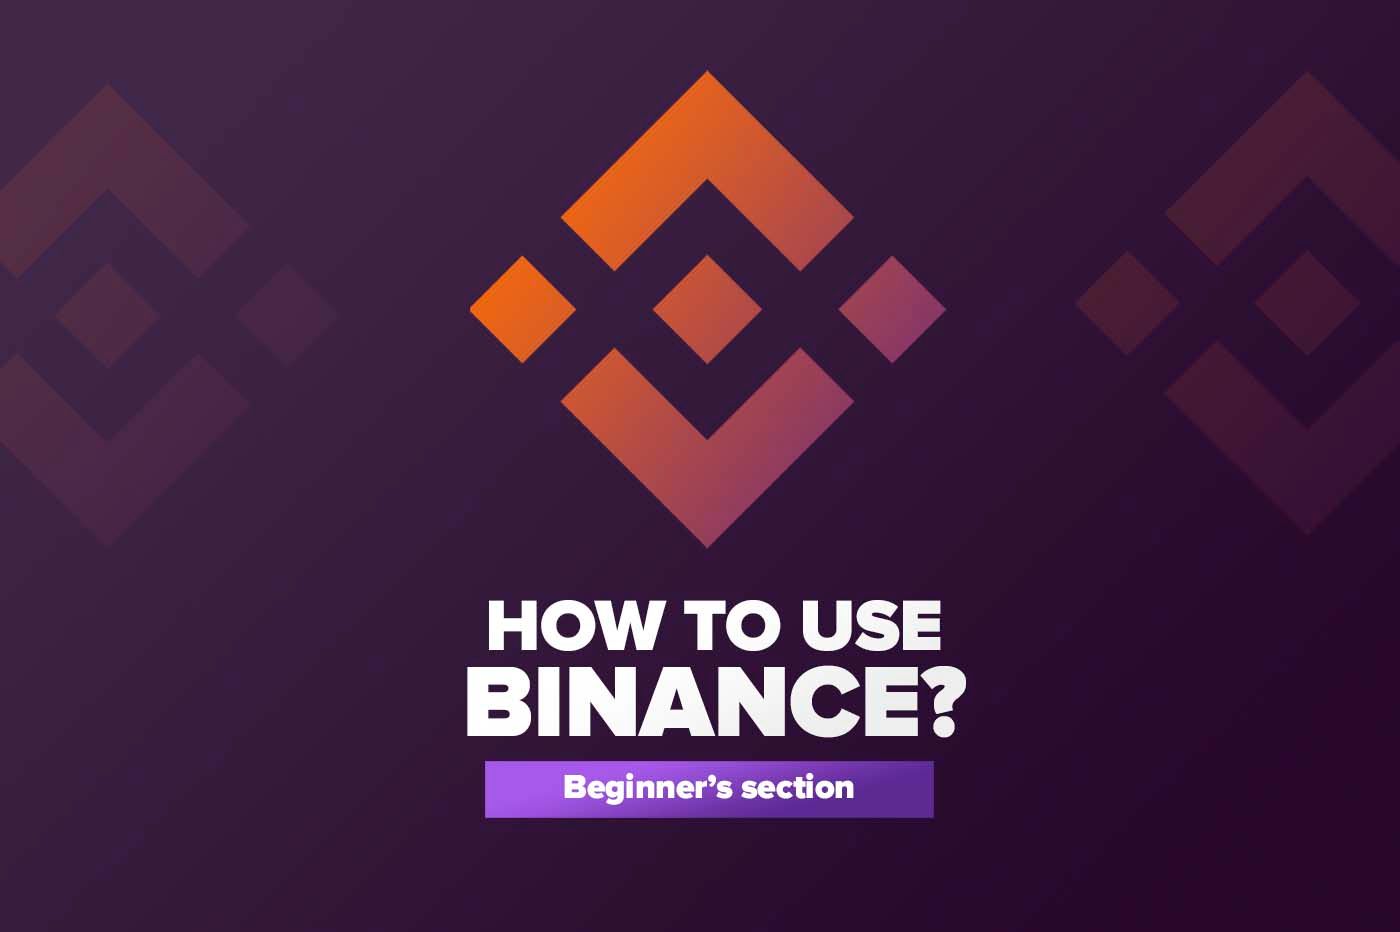 How to use Binance?